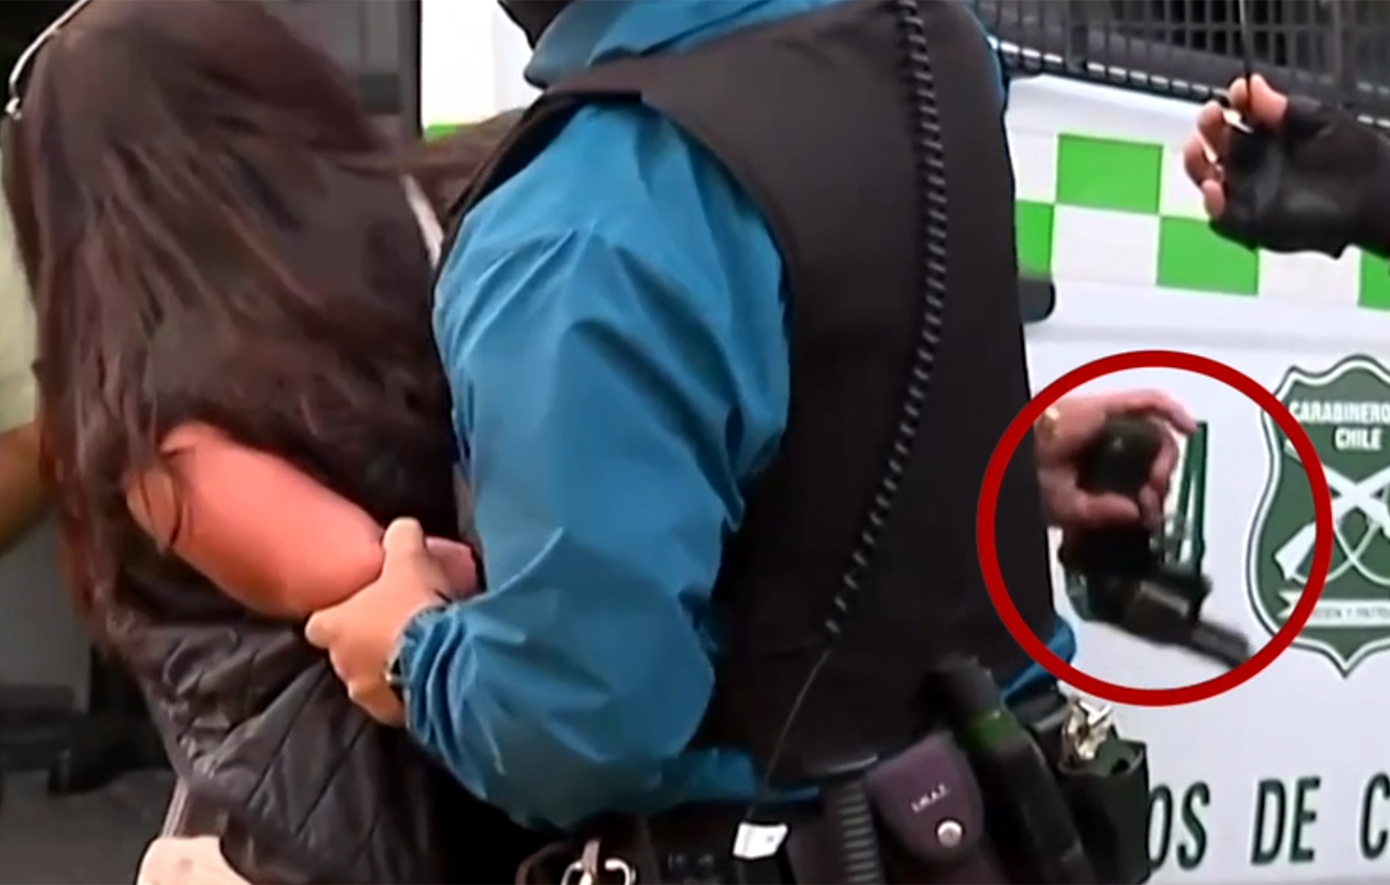 Απίστευτο βίντεο με γυναίκα κρατούμενη που κλέβει όπλο από αστυνομικό και ανοίγει πυρ στη Χιλή